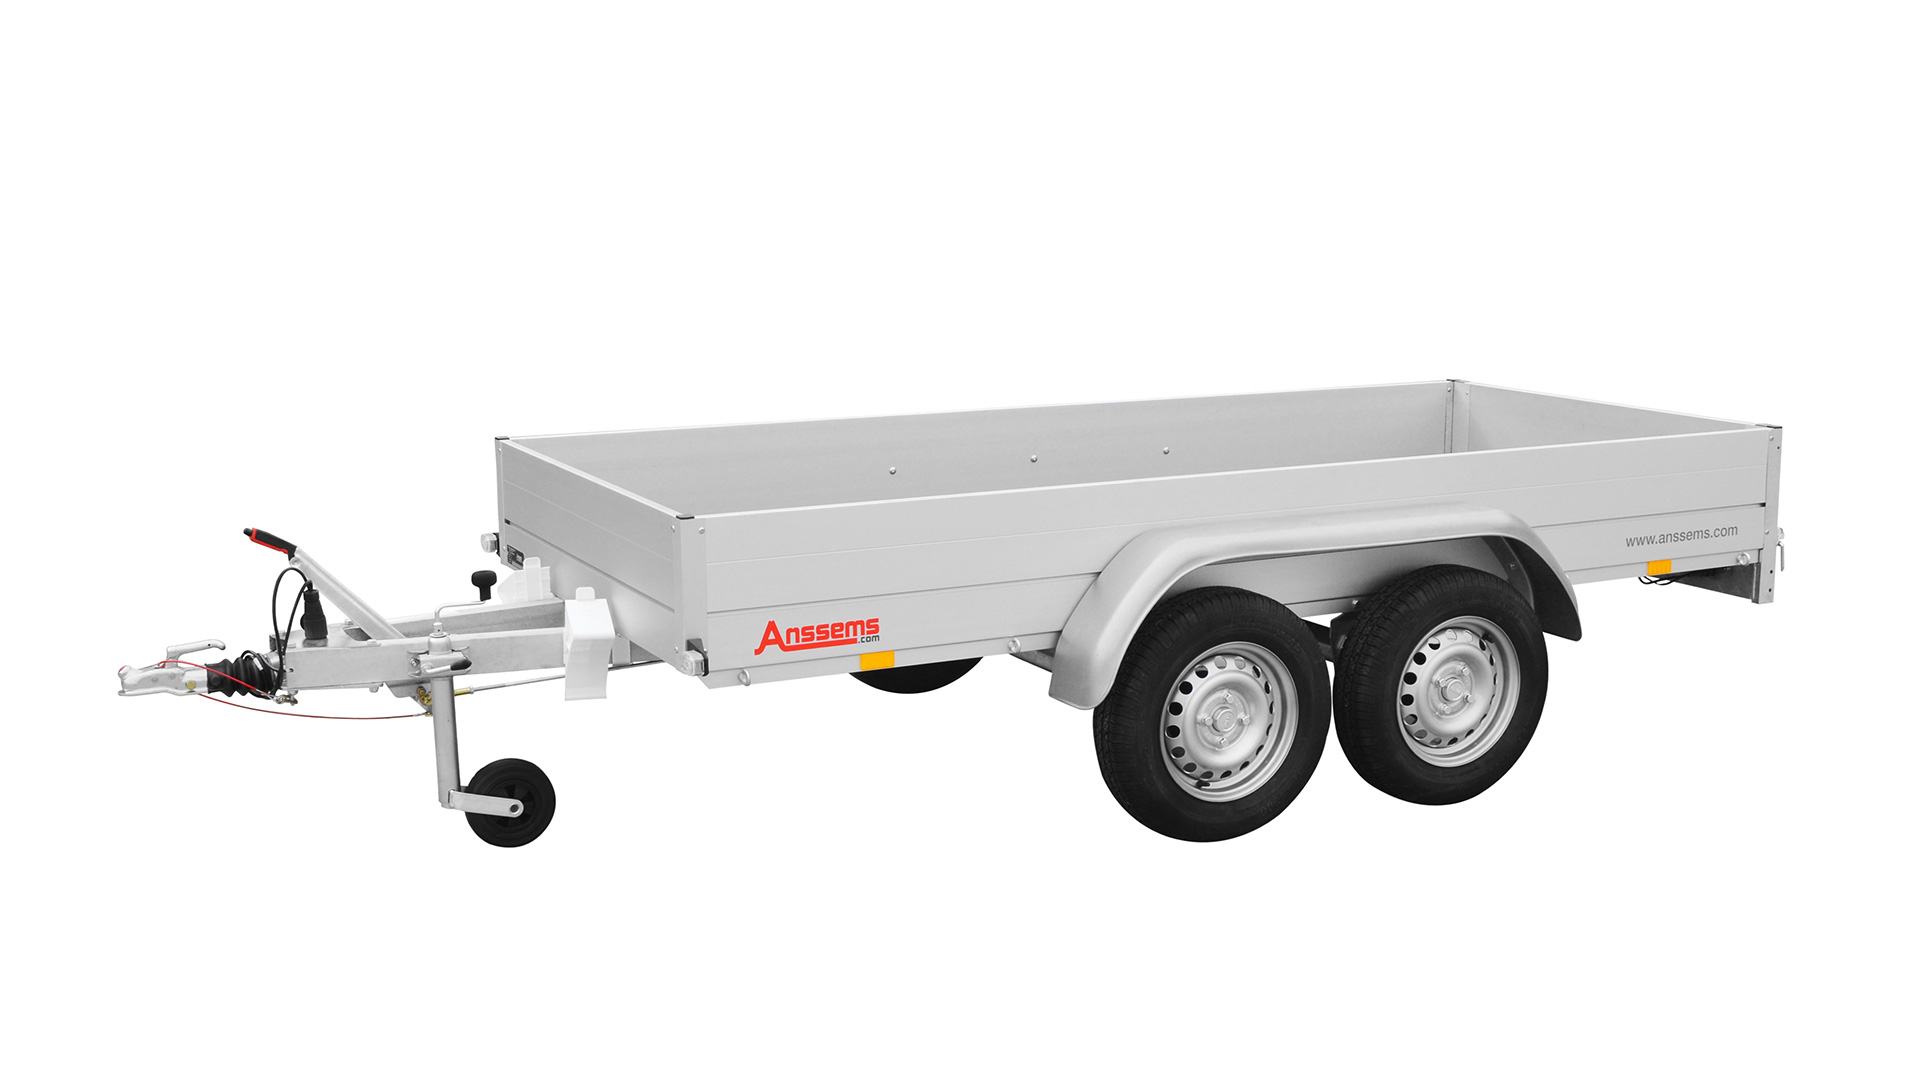 Anssems PKW Anhänger Tieflader Alu 2000 kg, Ladefläche 3,01x 1,26 m